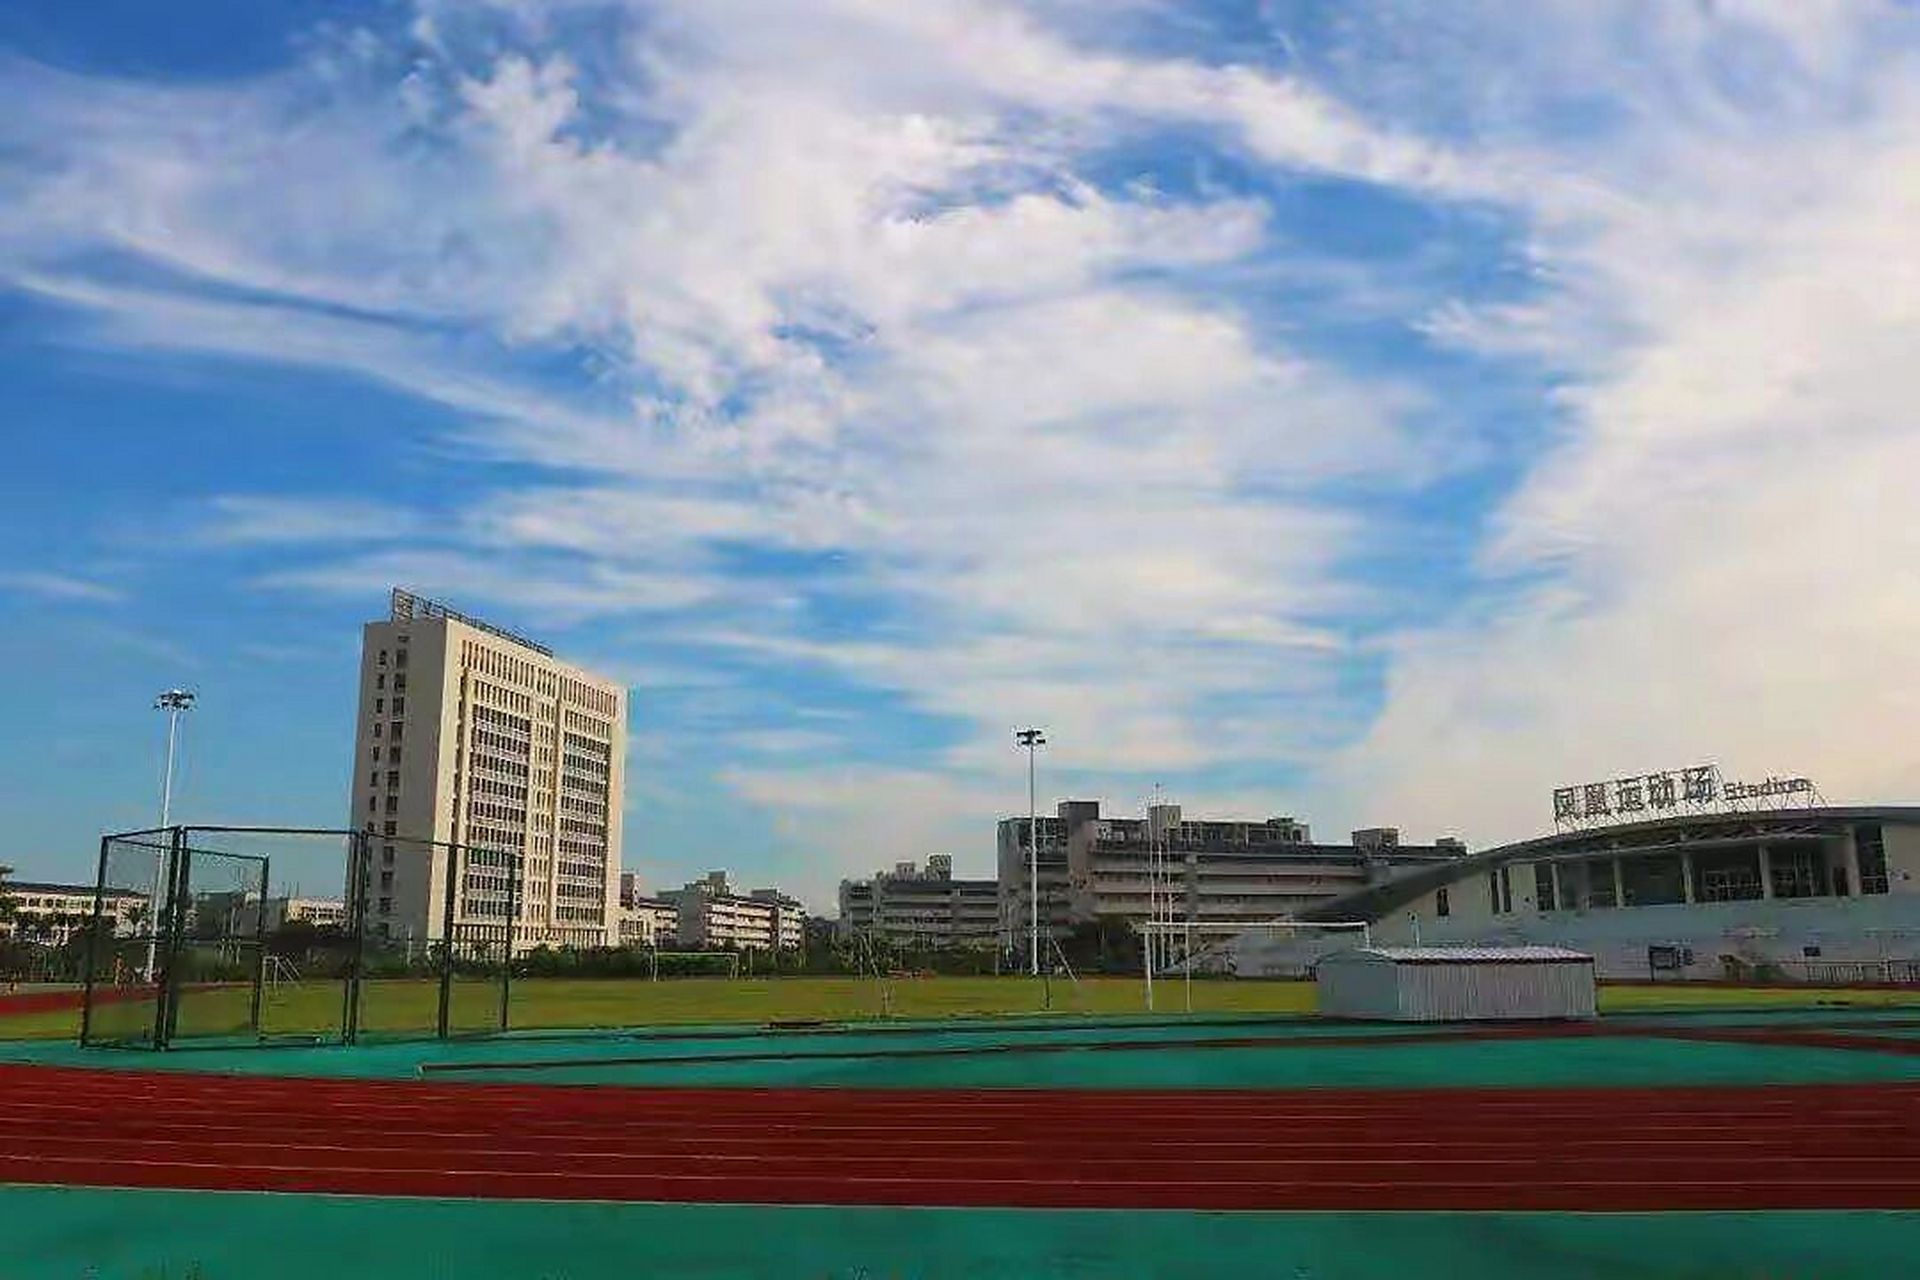 惠州市技师学院(惠州市高级技工学校)创建于1979年,延师办学42年佑 